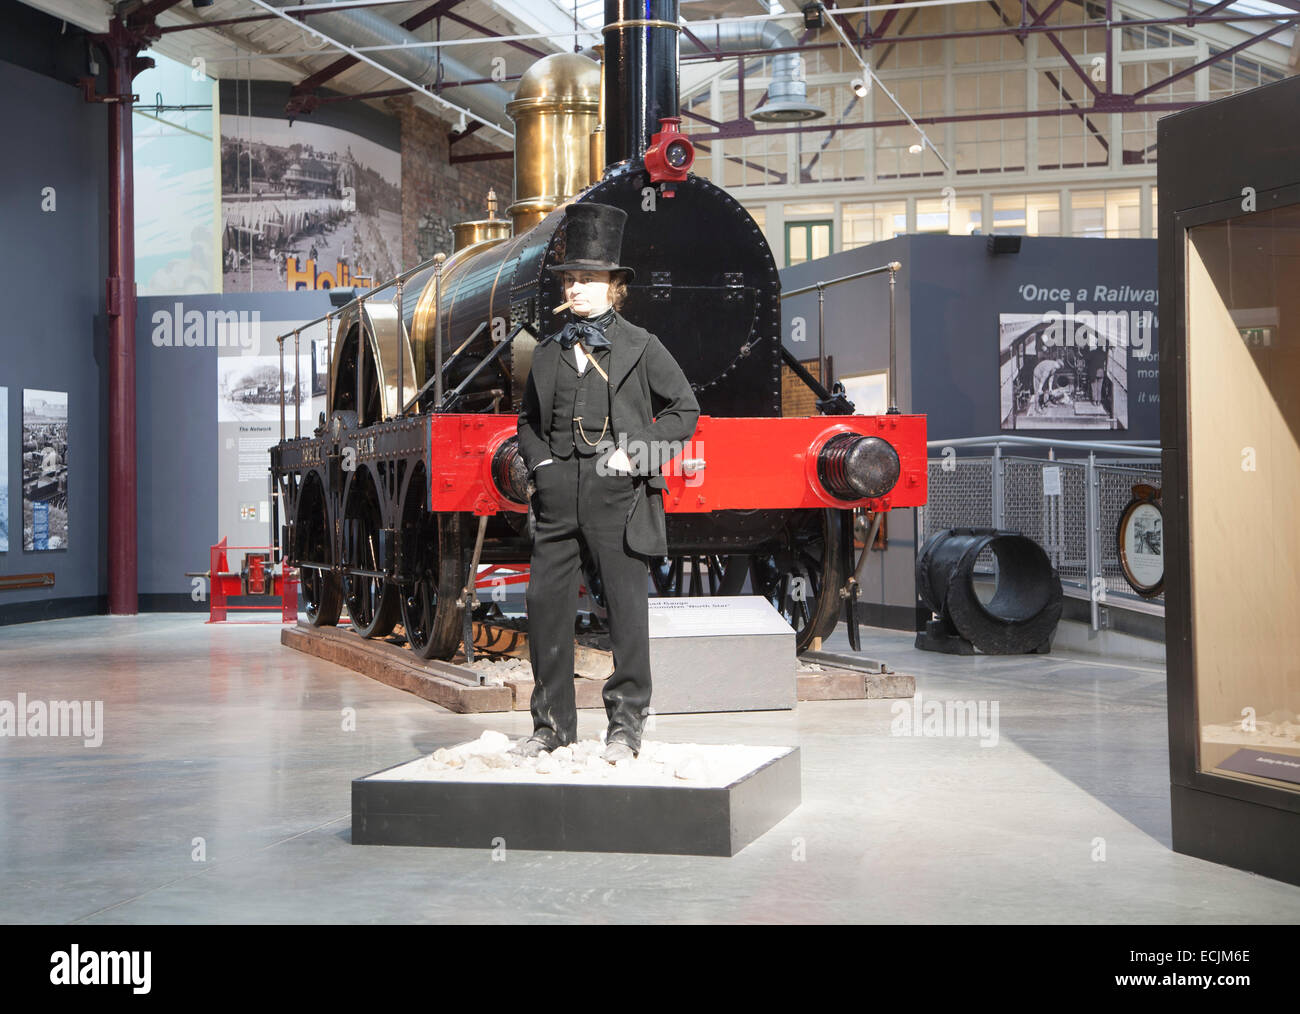 GWR il museo dei treni a vapore Swindon, Inghilterra, Regno Unito Isambard Kingdom Brunel manichino modello Foto Stock